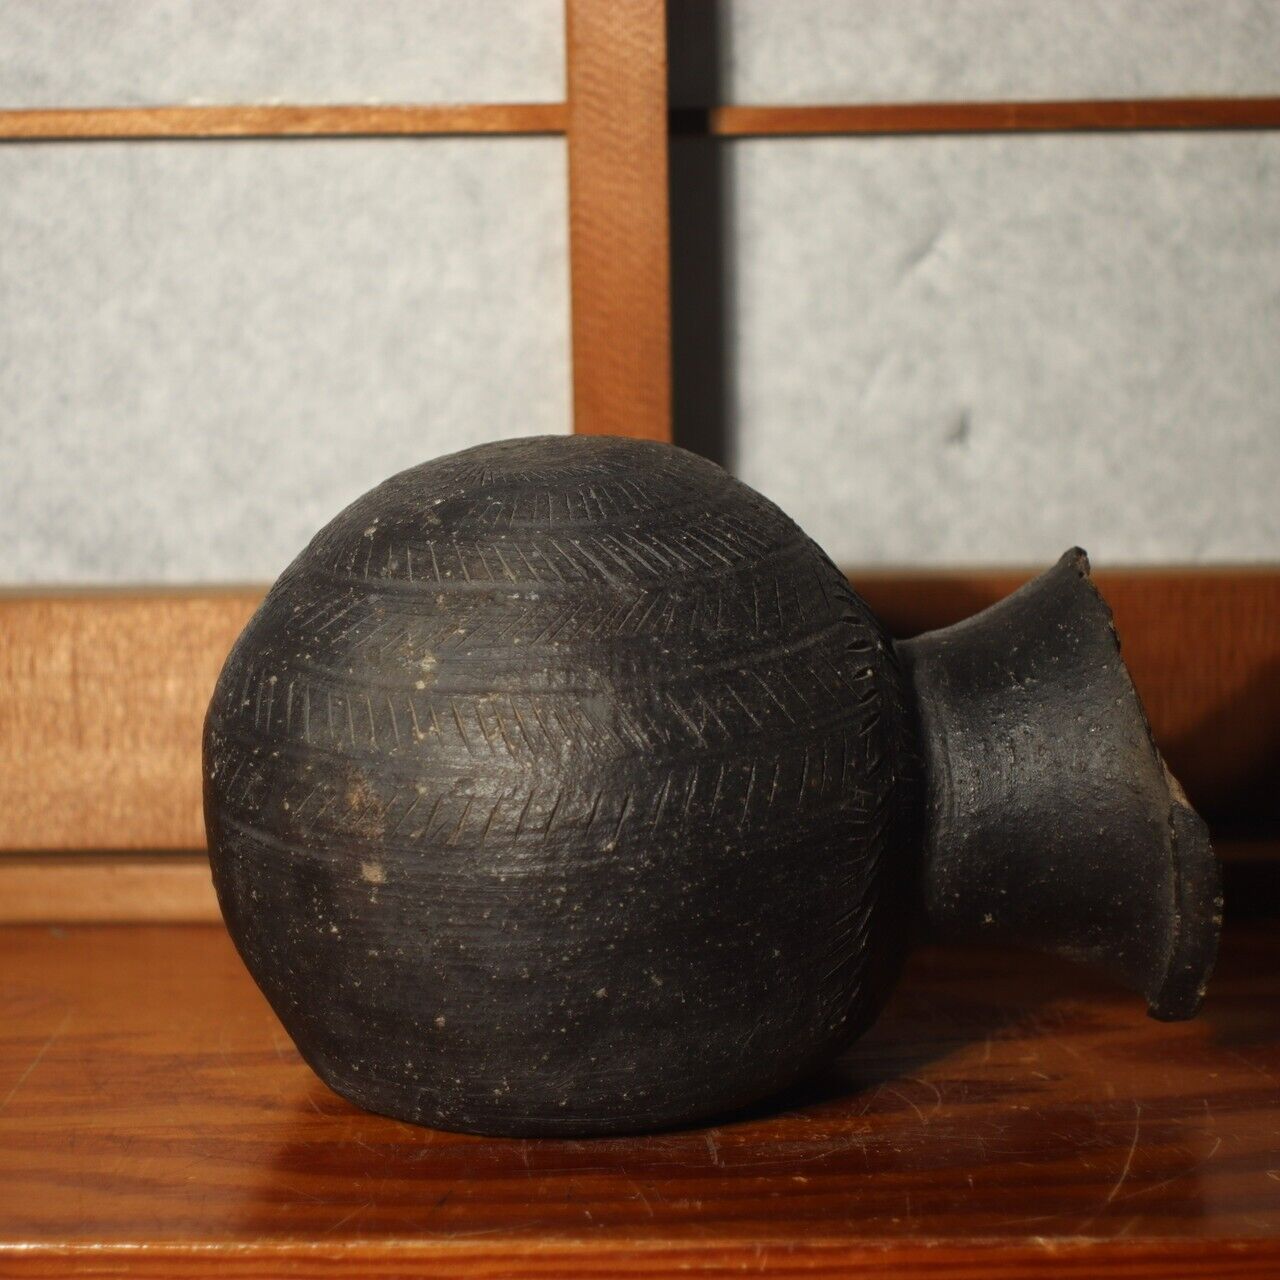 Japanese Antique Pottery Sueki Vase Ceramic 5-6th c PV191